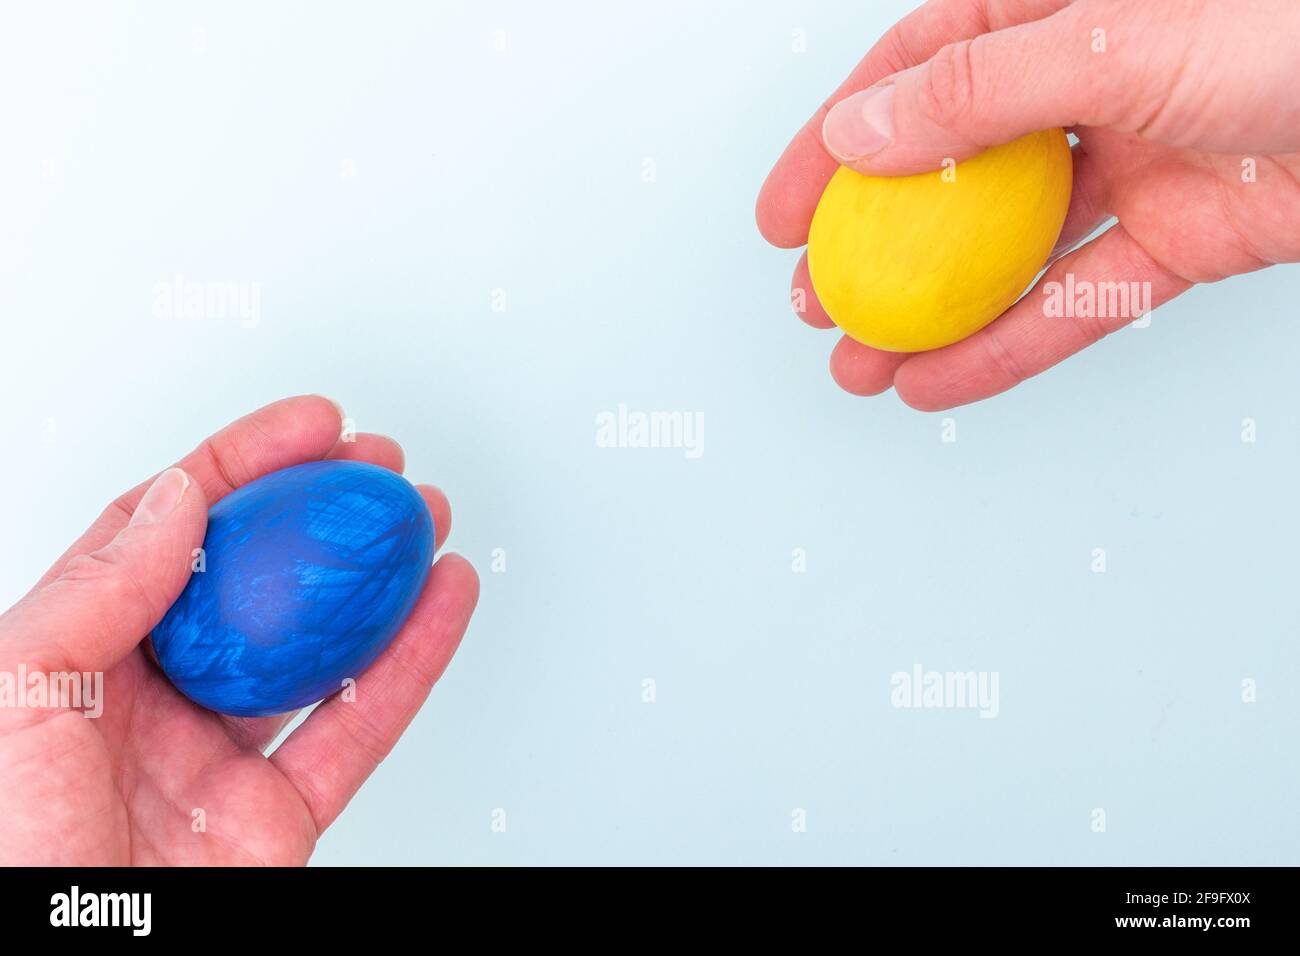 Concept joyeuses Pâques. Deux mains se donnent des œufs de Pâques peints sur fond bleu, gros plan, espace de copie. Les œufs sont un symbole de Pâques. Banque D'Images